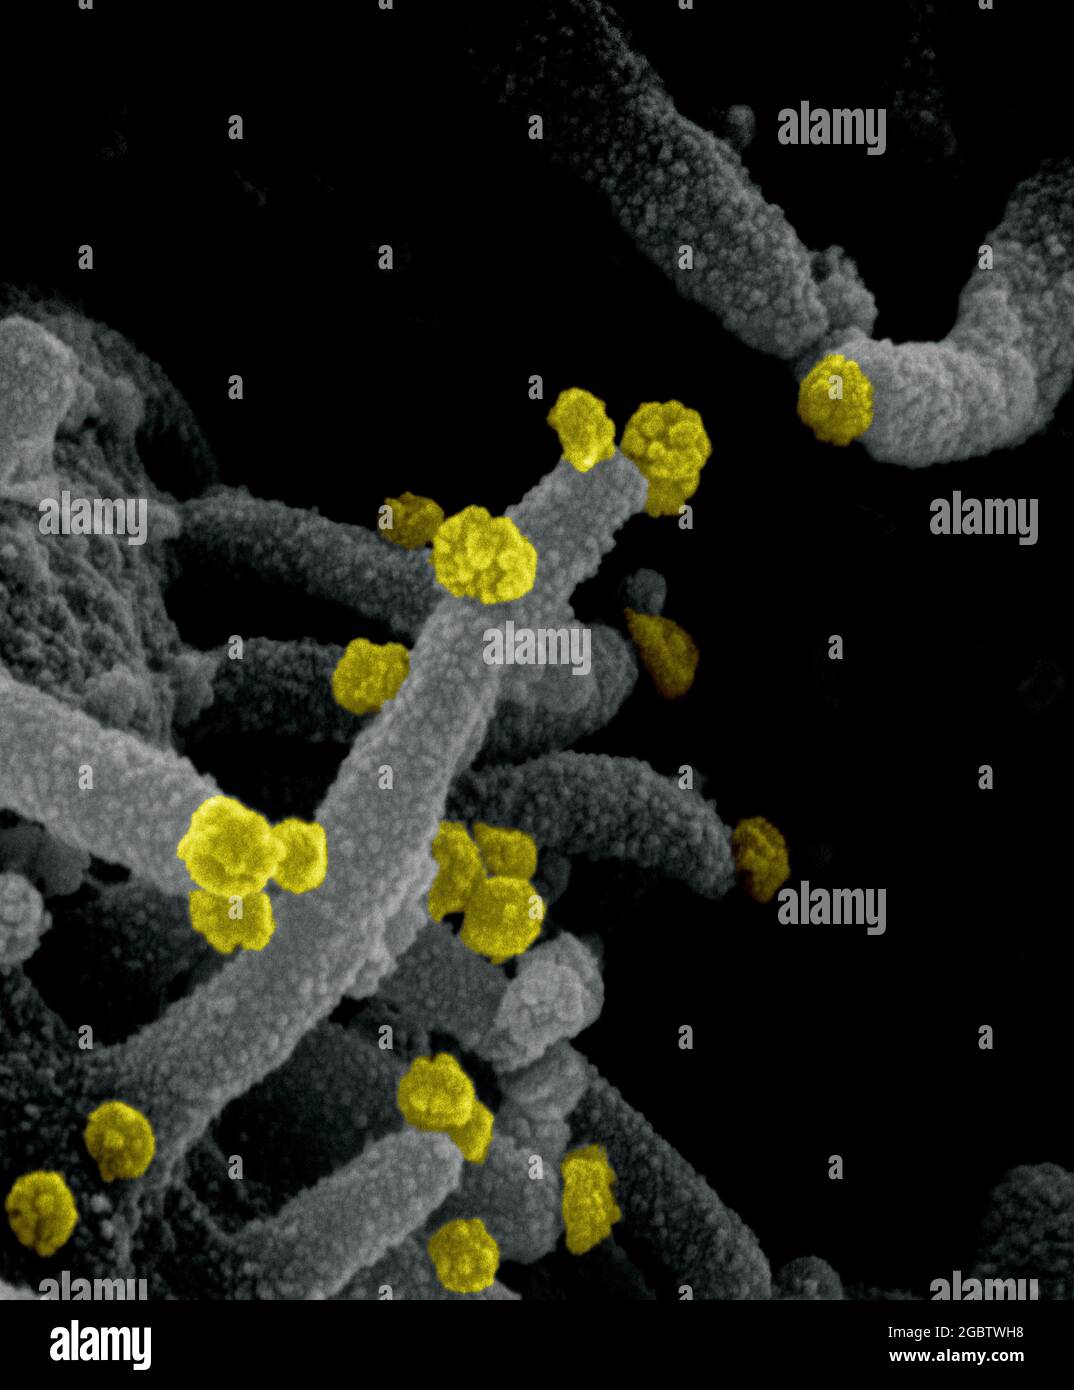 Novel Coronavirus SARS-COV-2 questa immagine al microscopio elettronico a scansione mostra SARS-COV-2 (particelle rotonde gialle) che emergono dalla superficie di una cellula coltivata nel laboratorio. SARS-COV-2, noto anche come 2019-nCoV, è il virus che causa COVID-19. Immagine catturata e colorata presso i Rocky Mountain Laboratories di Hamilton, Montana. Credito: NIAID Foto Stock